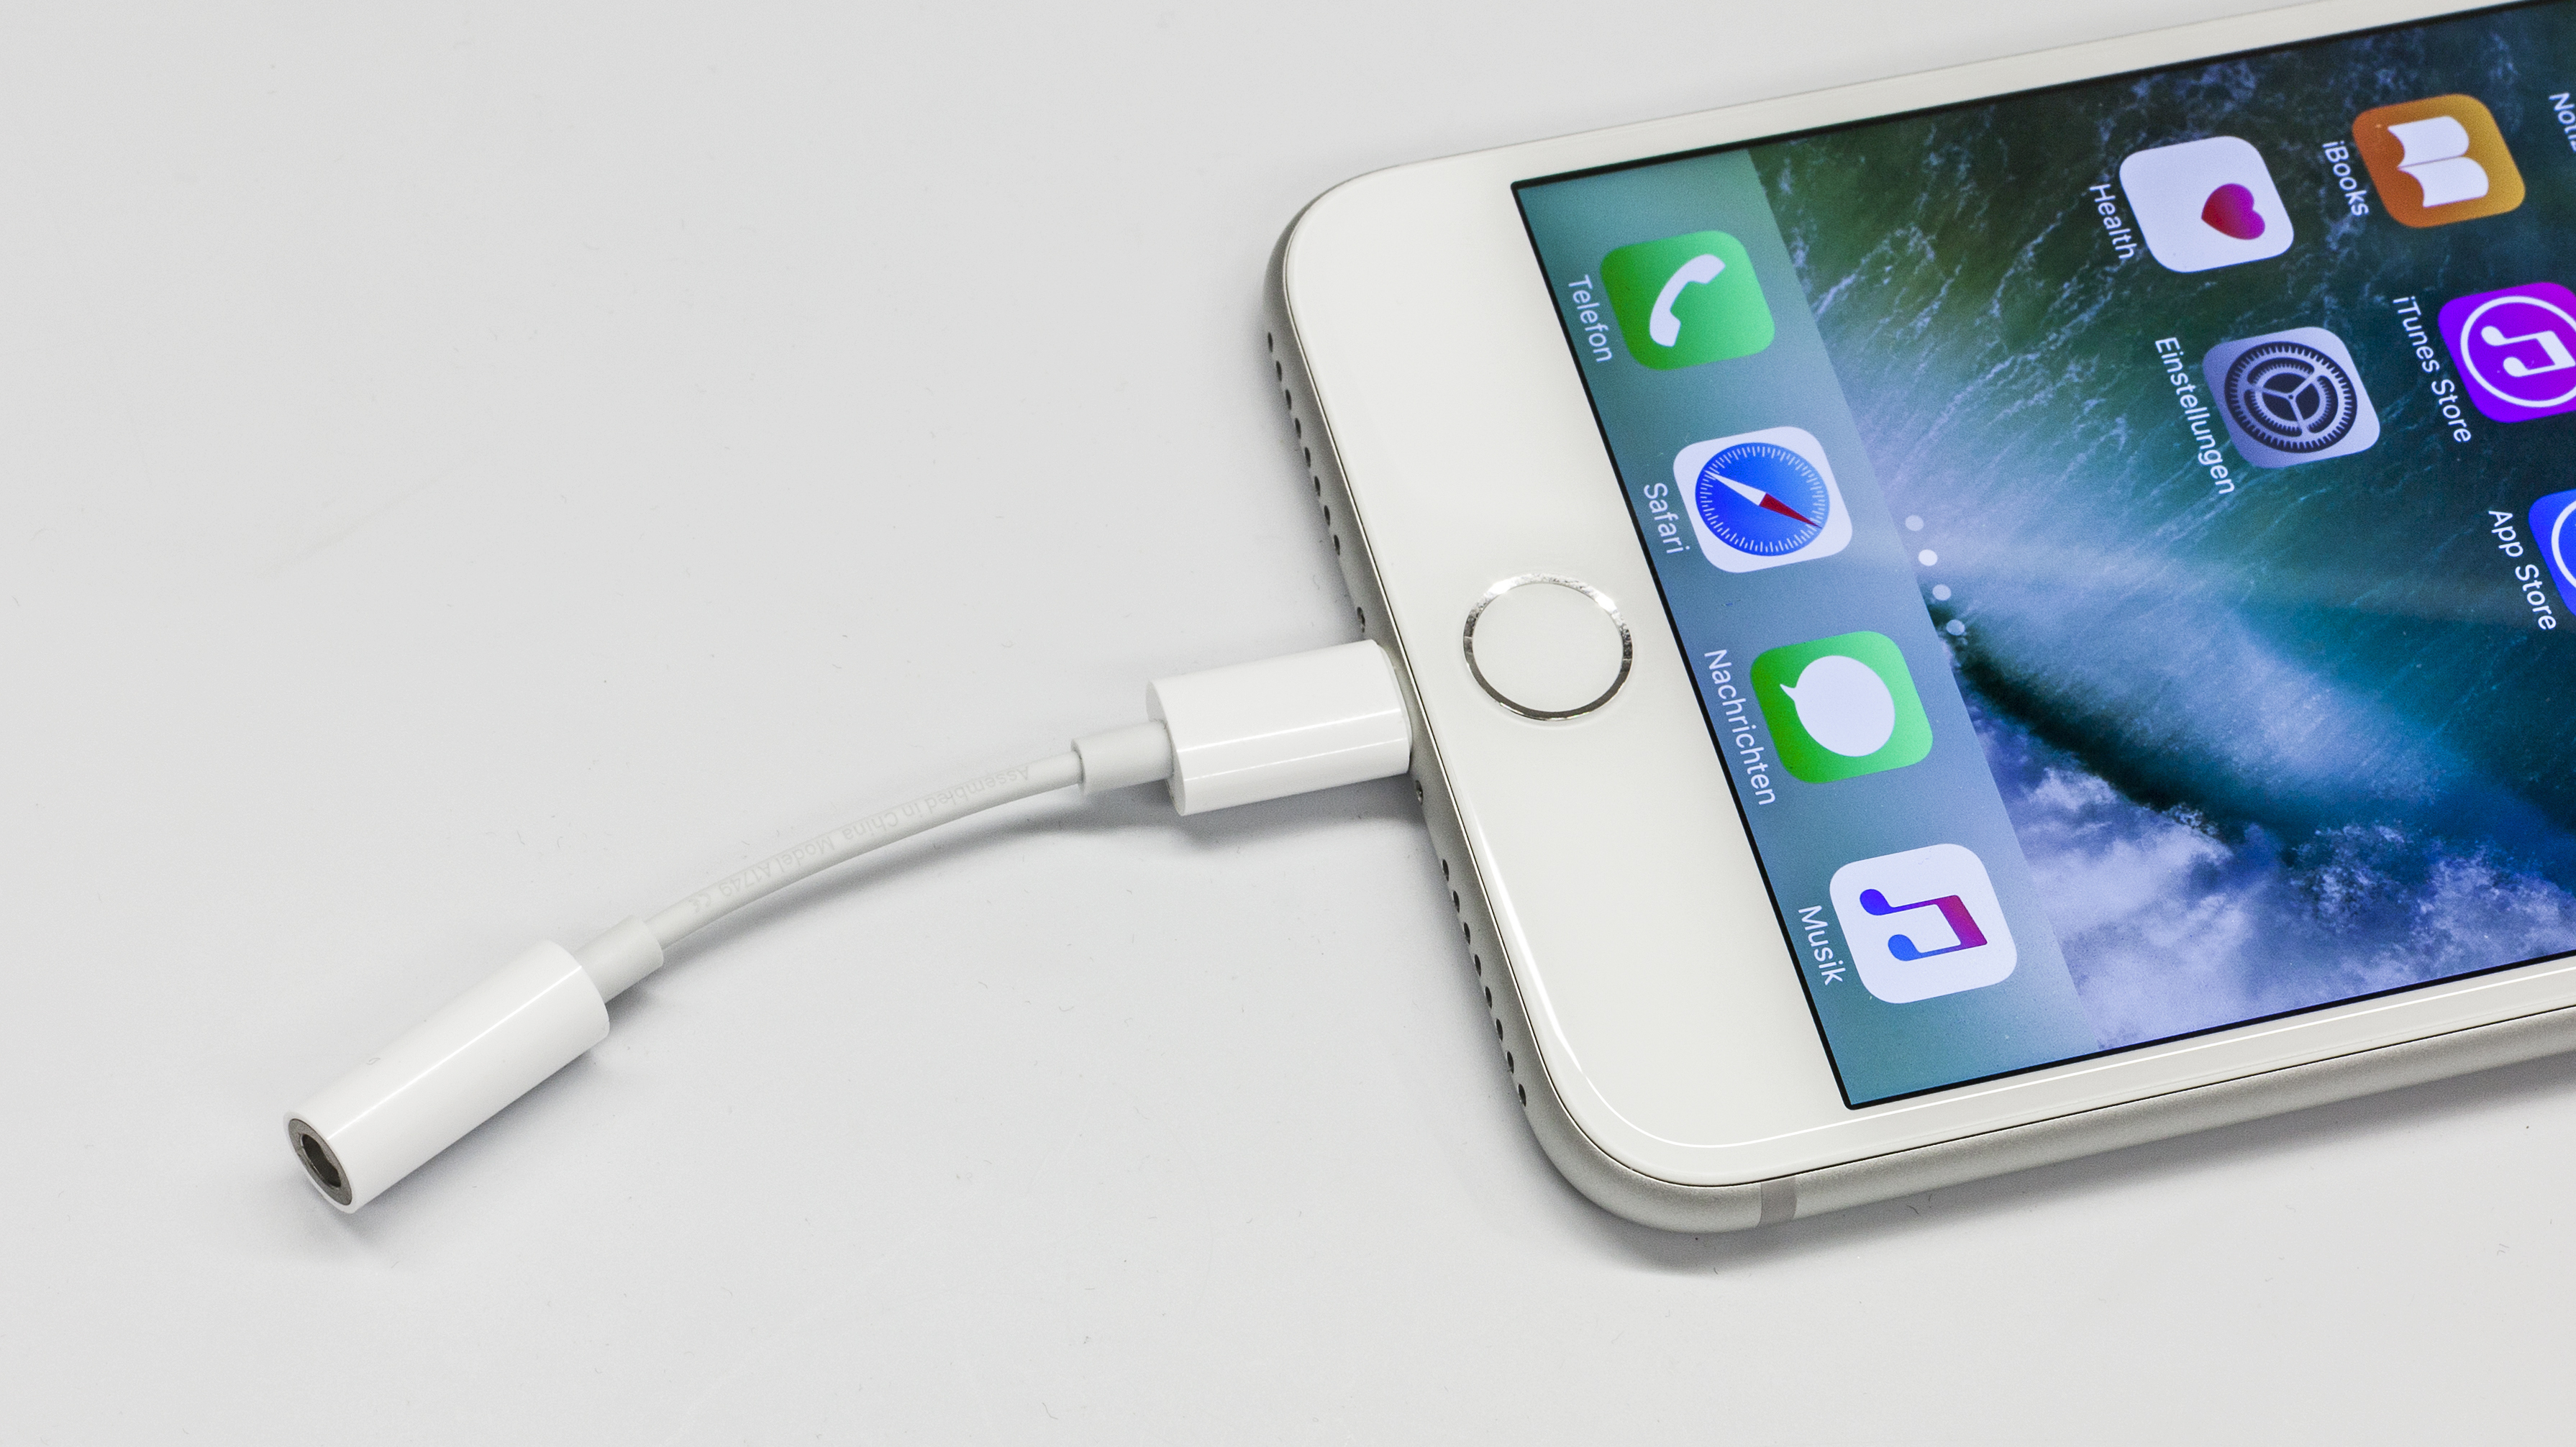 iPhone 7 gemessen: Audio-Adapter liefert schlechteren Sound | heise online